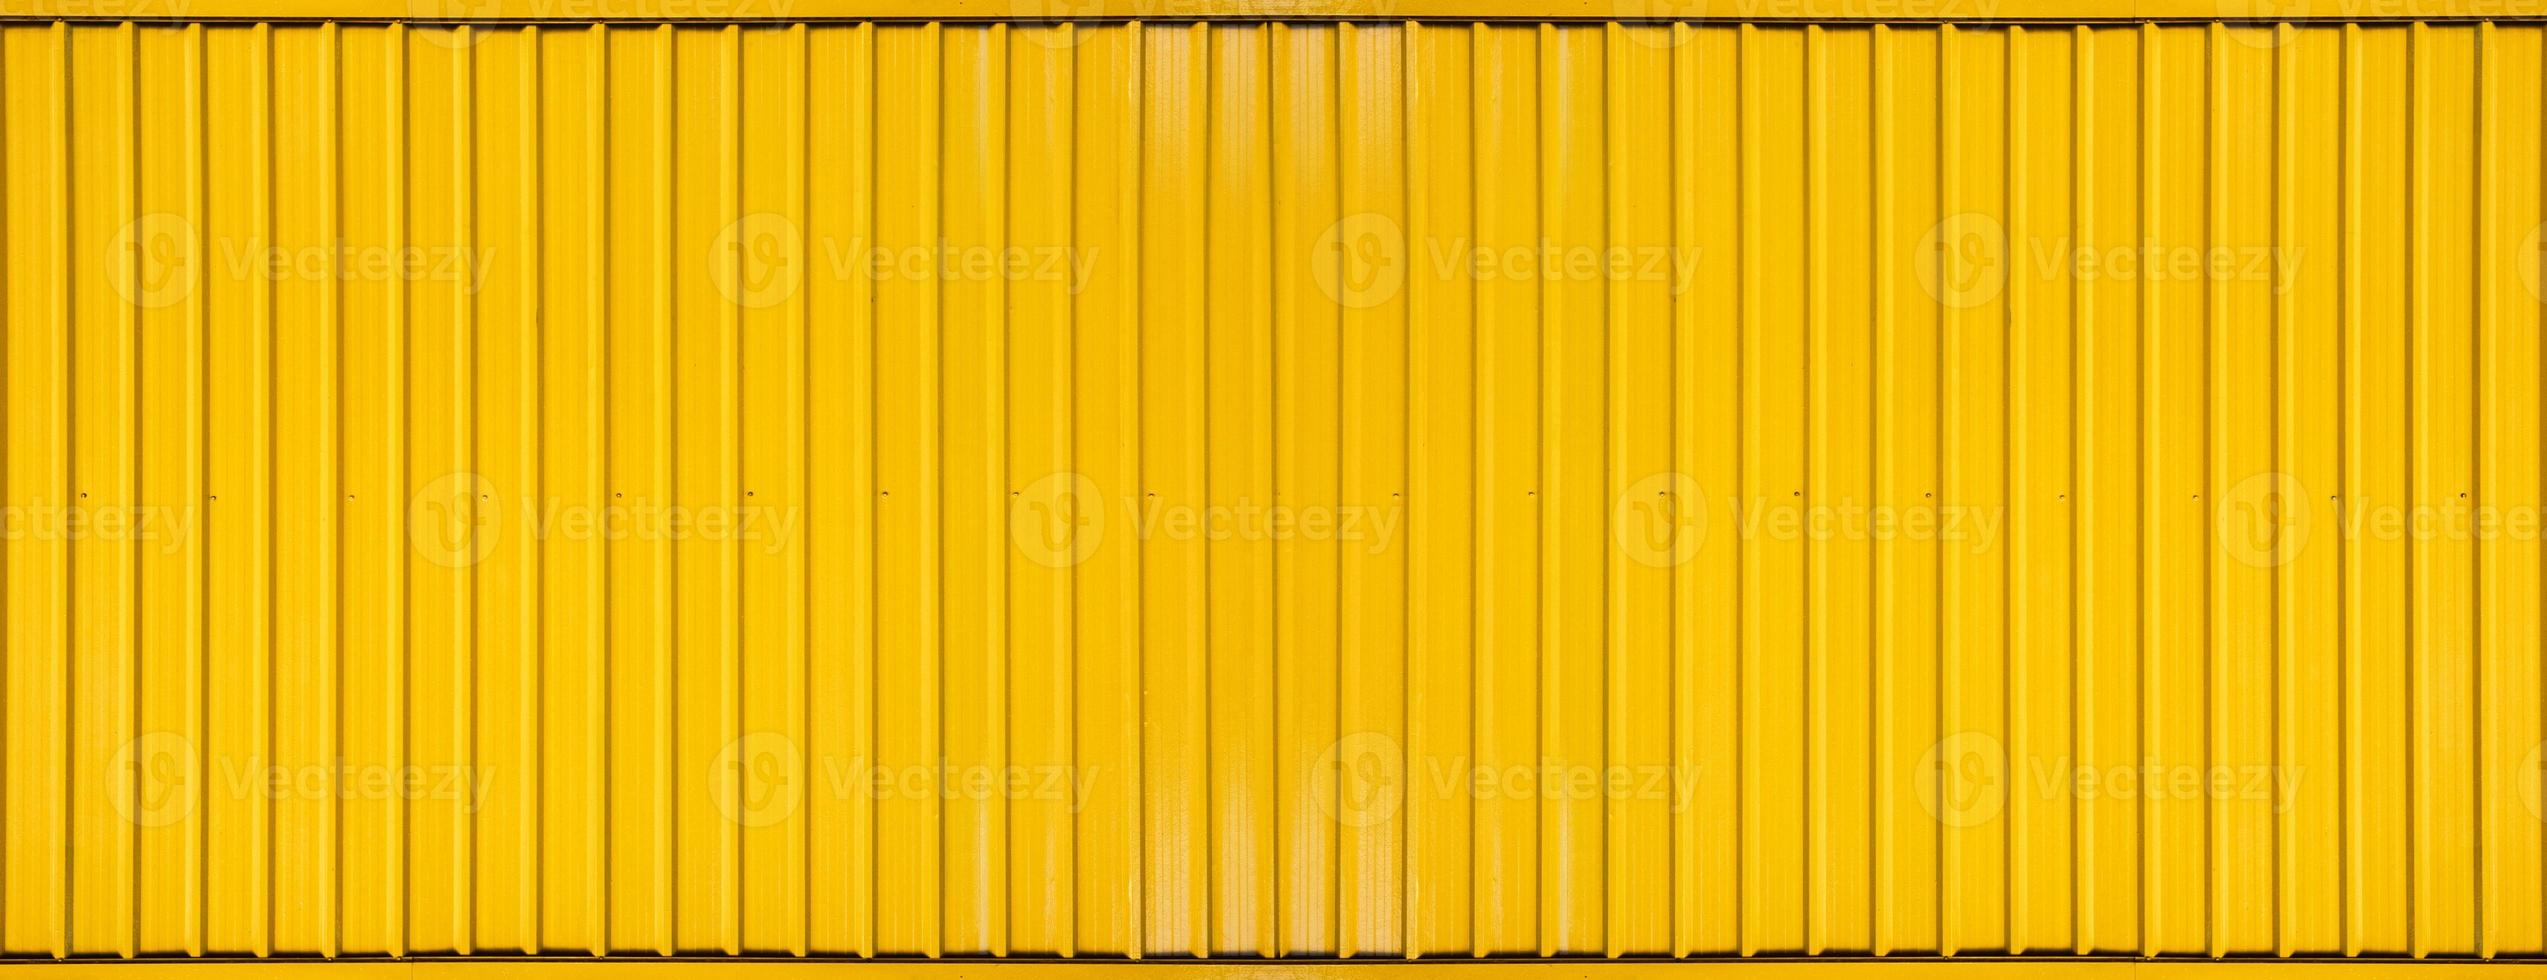 gele doos container gestreepte lijn getextureerde achtergrond foto